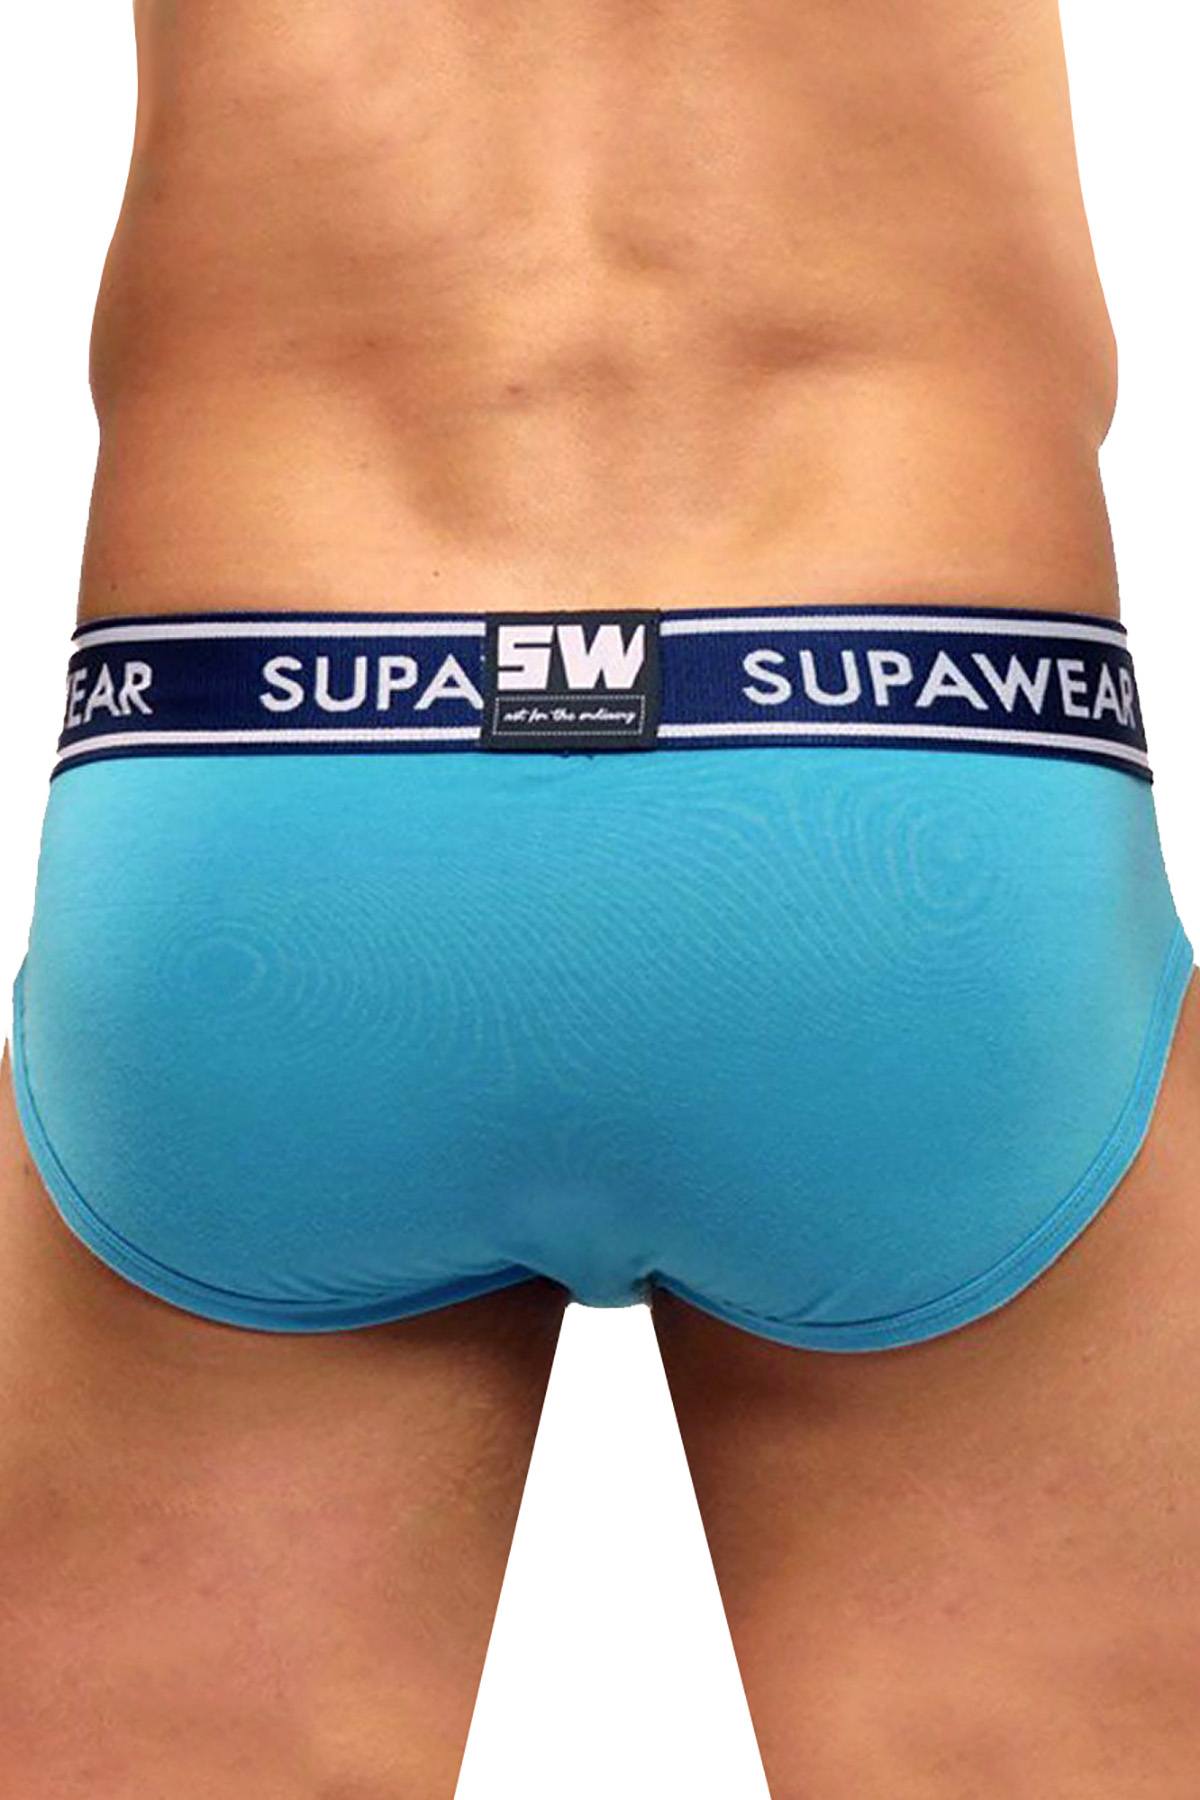 Supawear Blue SUPA DUPA MK2 Brief